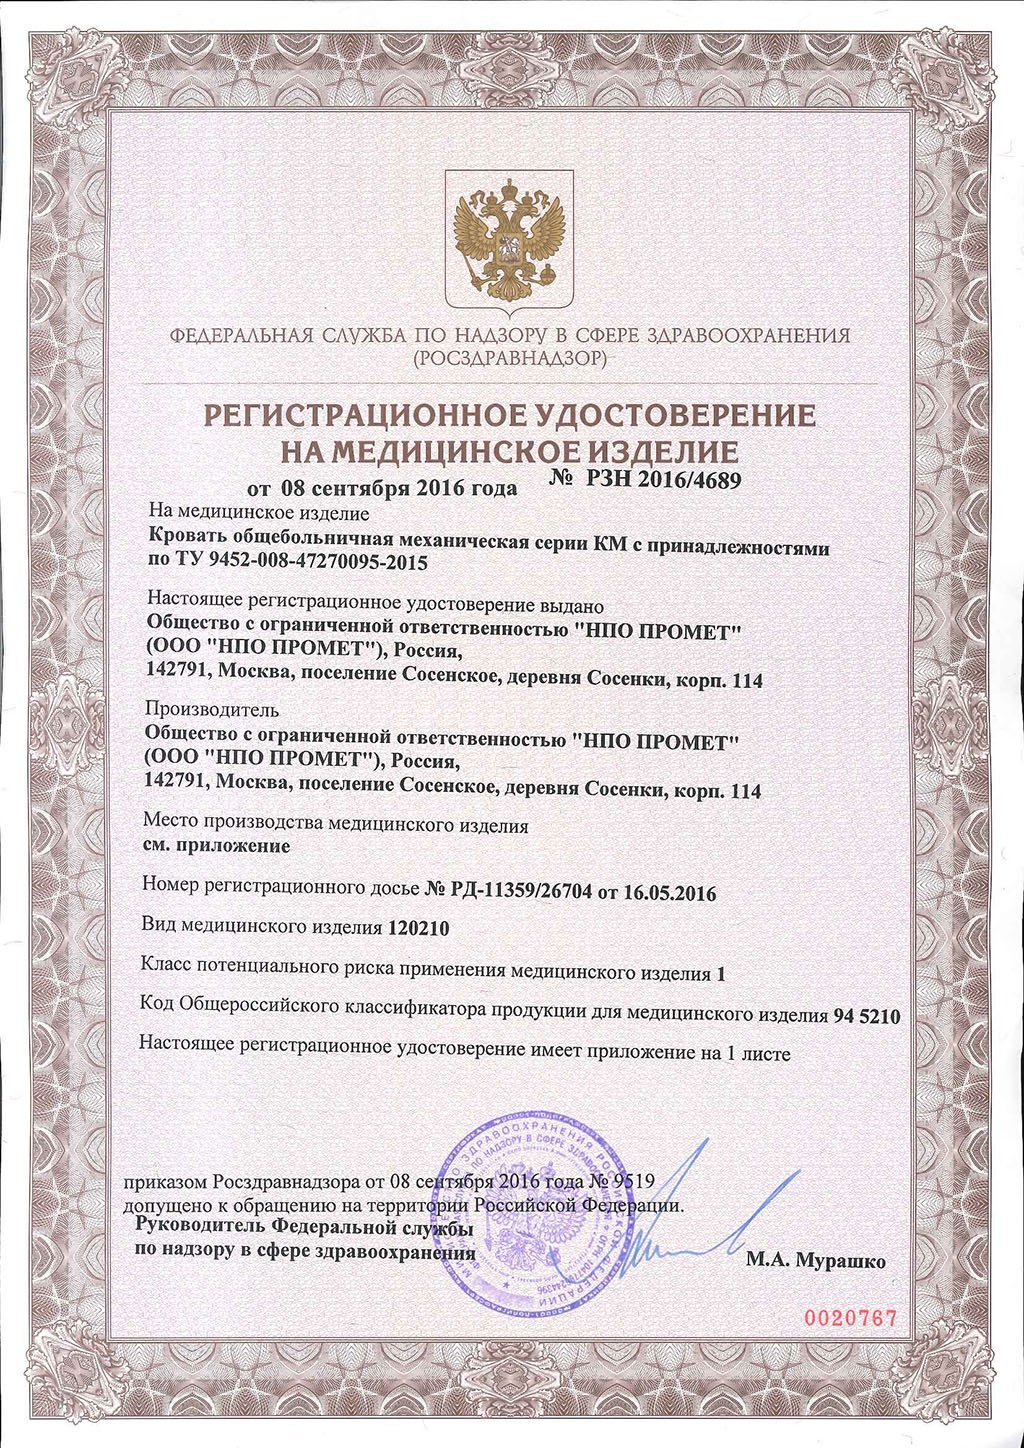 Pегистрационное-удостоверение-на-Кровати_КМ-1